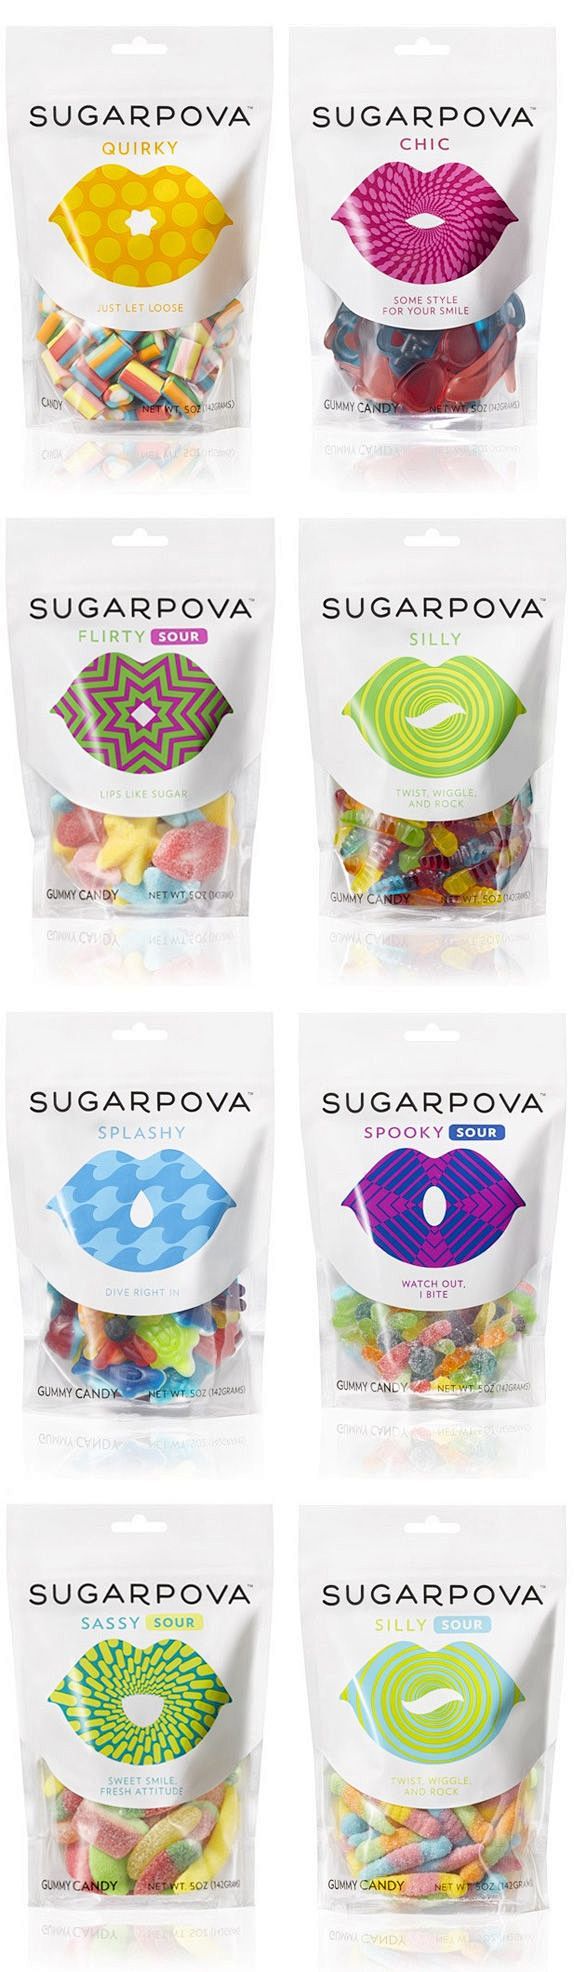 Sugarpova Logo and P...